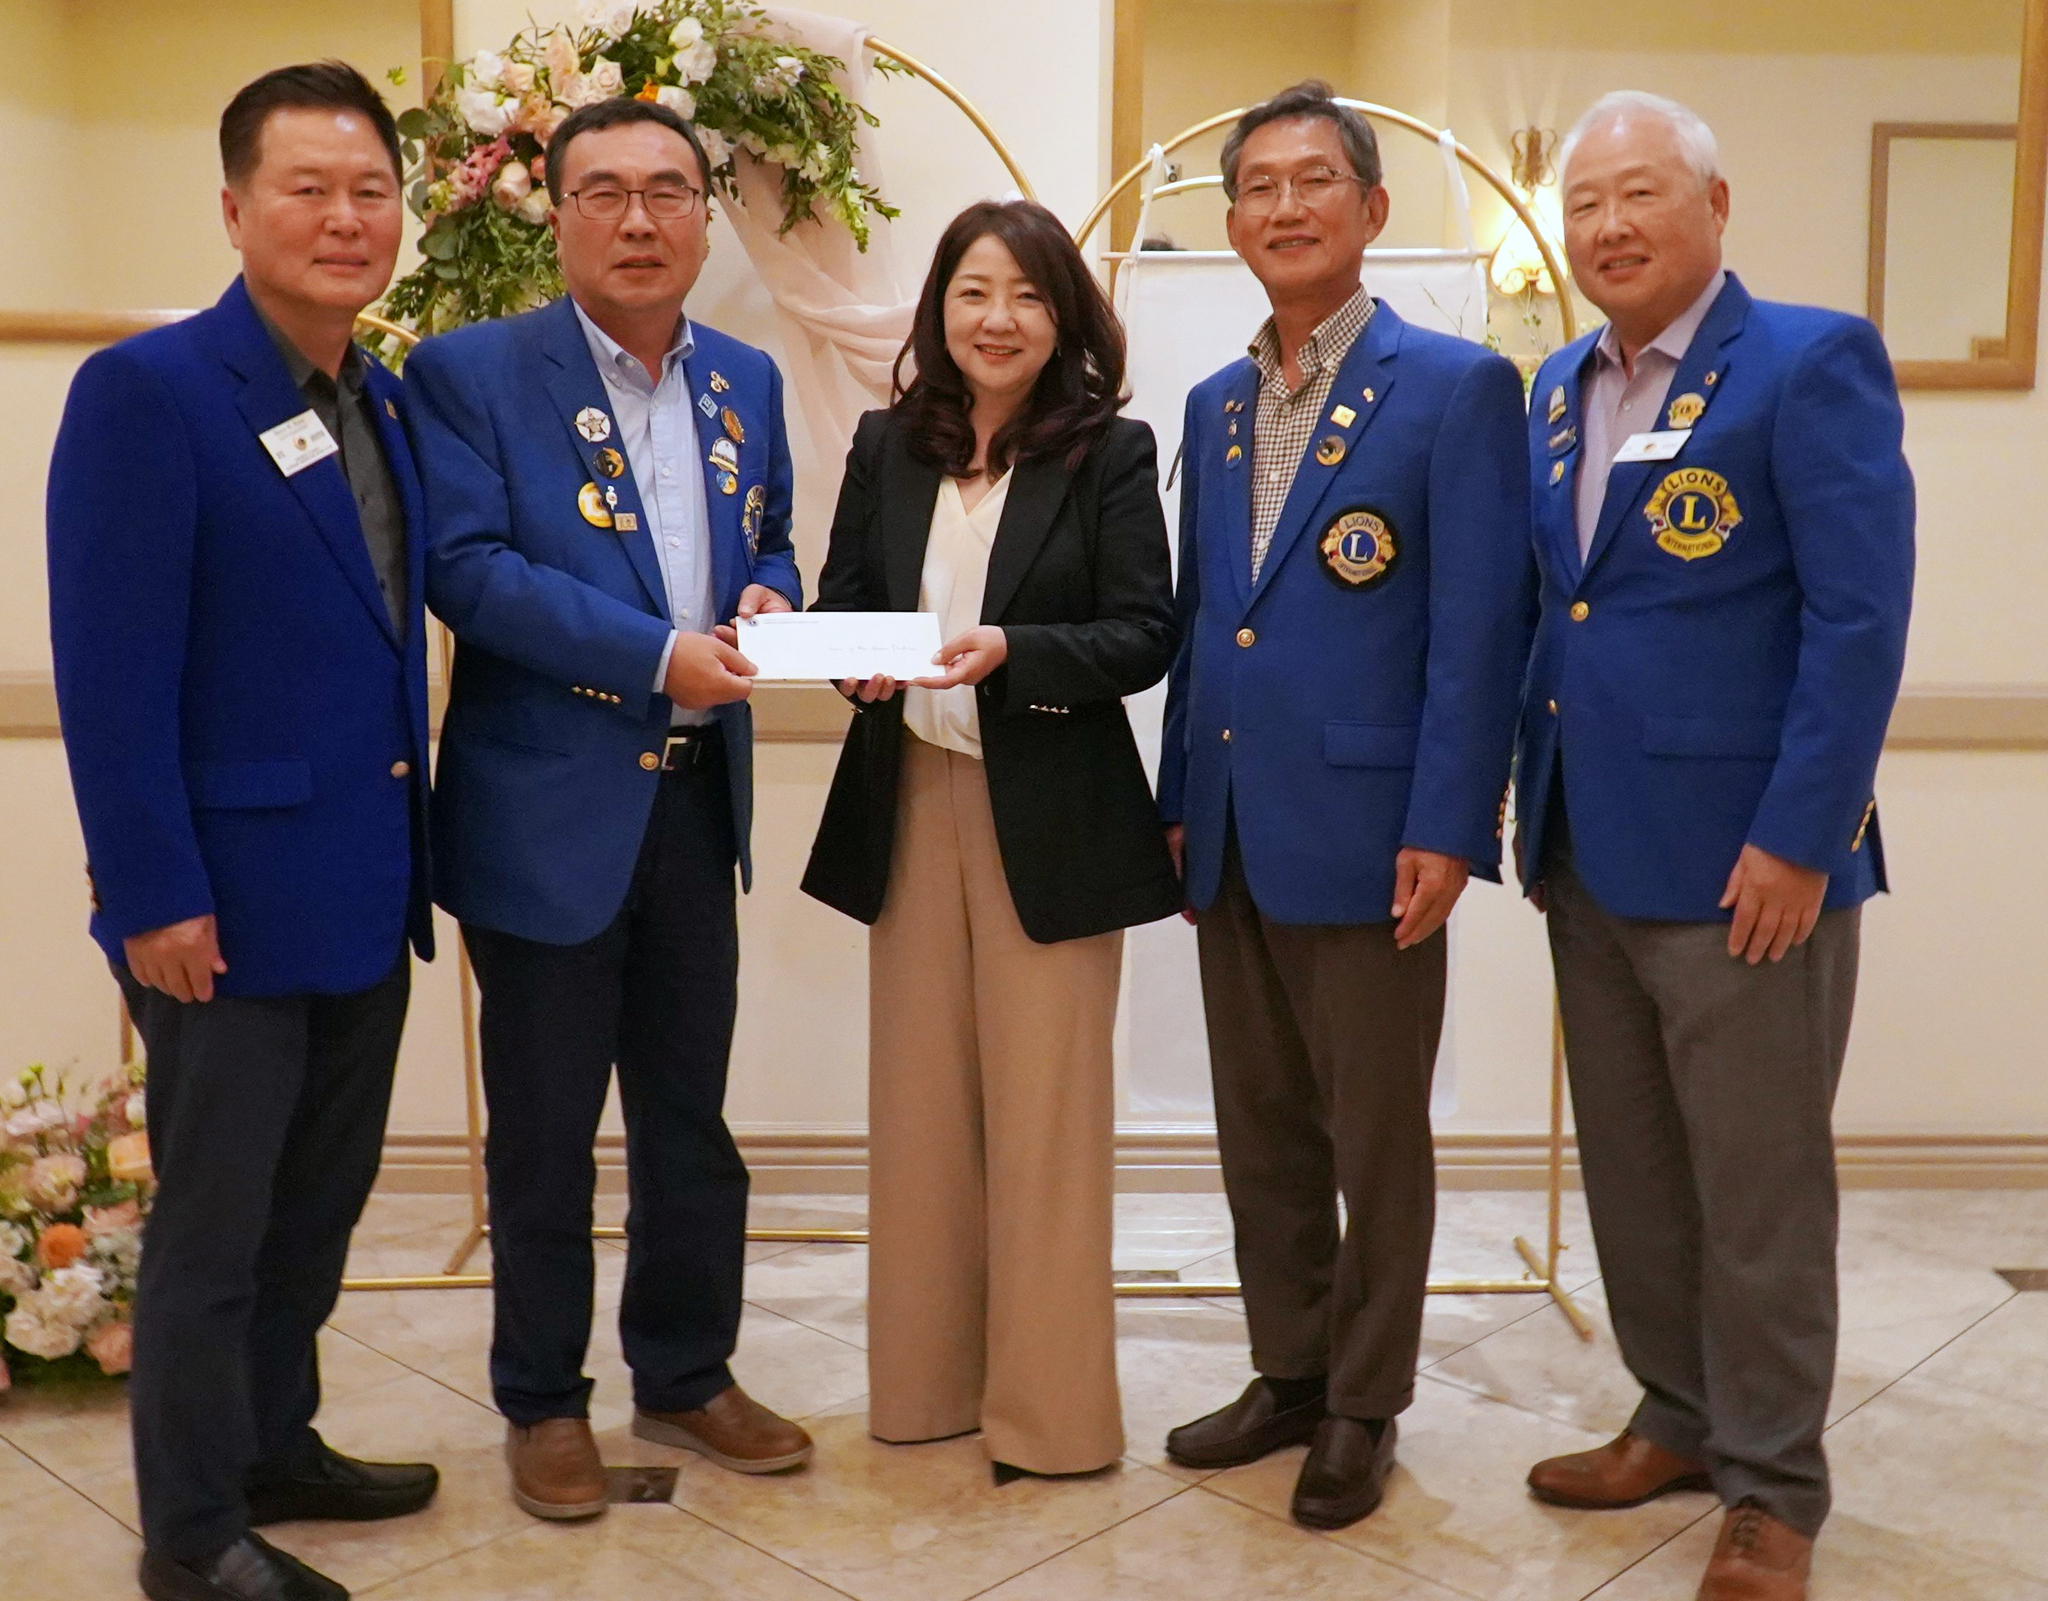 박경모(왼쪽에서 2번째) 회장을 비롯한 OC한인라이온스클럽 관계자들이 김 이사장에게 기부금을 전달하는 모습. [푸른초장의 집 제공] 